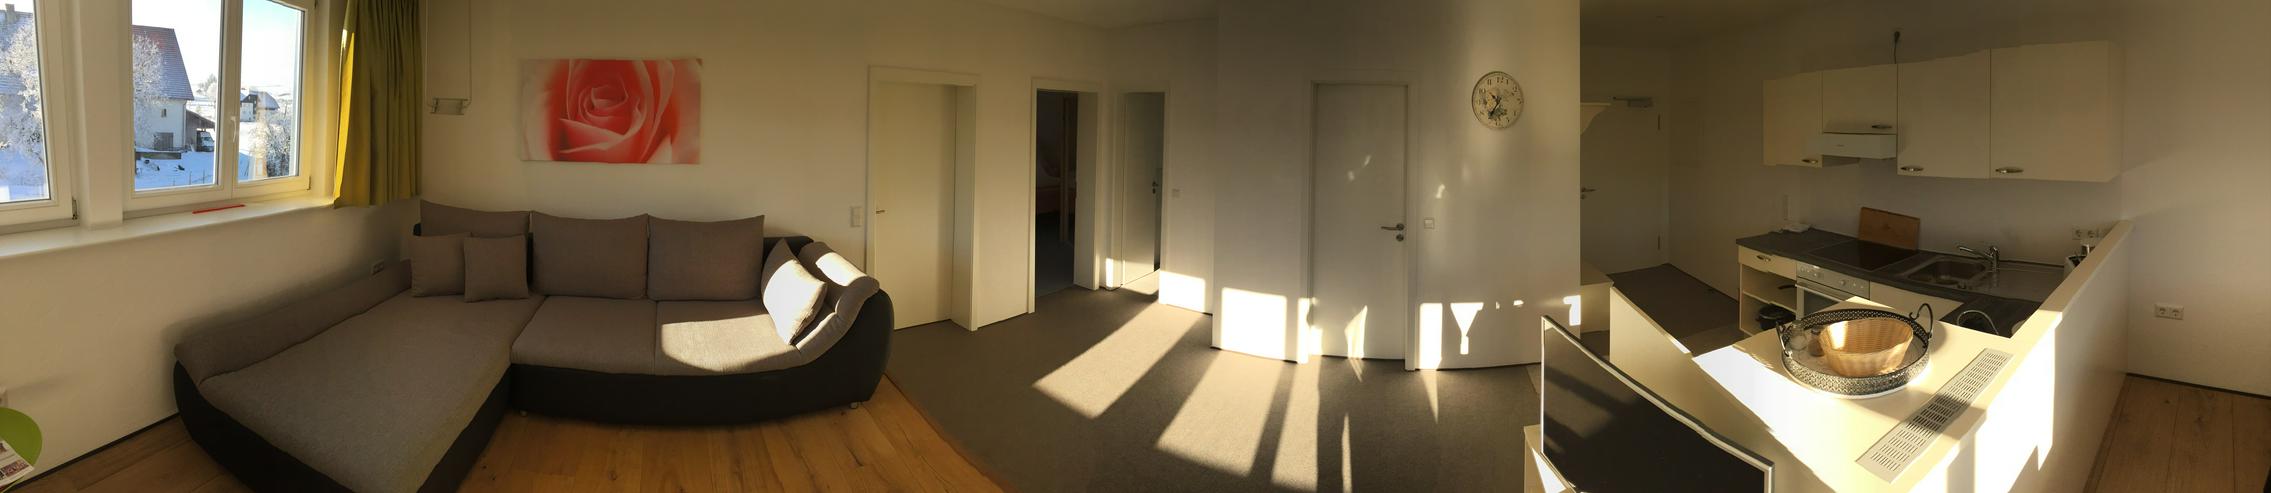 Möbeliertes Zimmer, 30m2 oder vollmöbelierte Ferienwohnung, 85m2 mit Langzeitmiete-Vertrag (ab 1 Monat im Schwarzwald mit Verlängerungsoption) - Zimmer - Bild 6